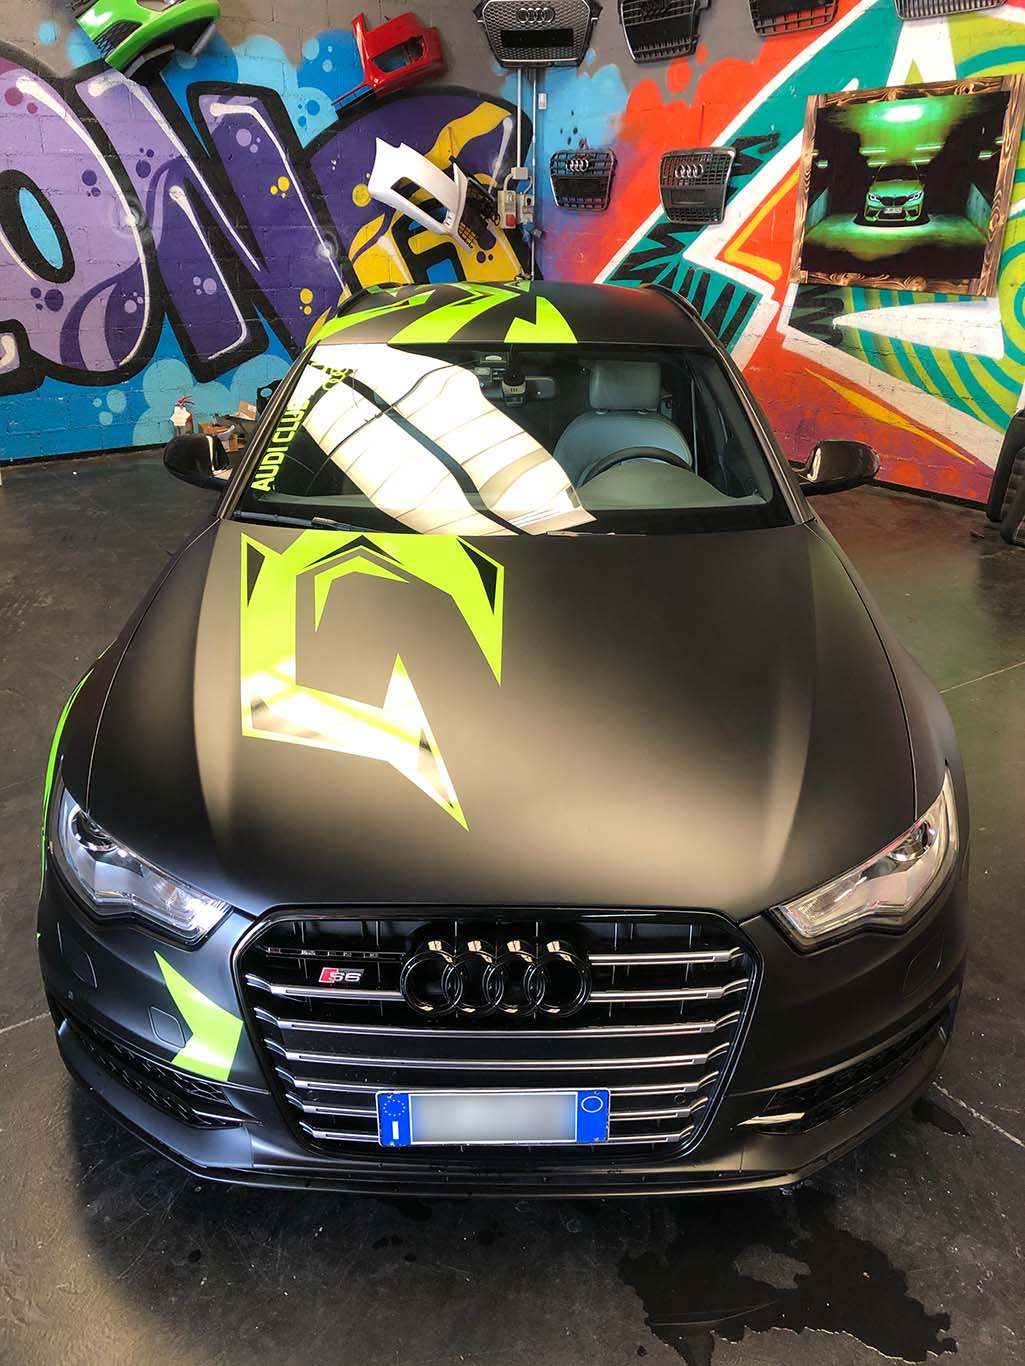 Wrap Audi A6 nero / verde – Wrap Boyz